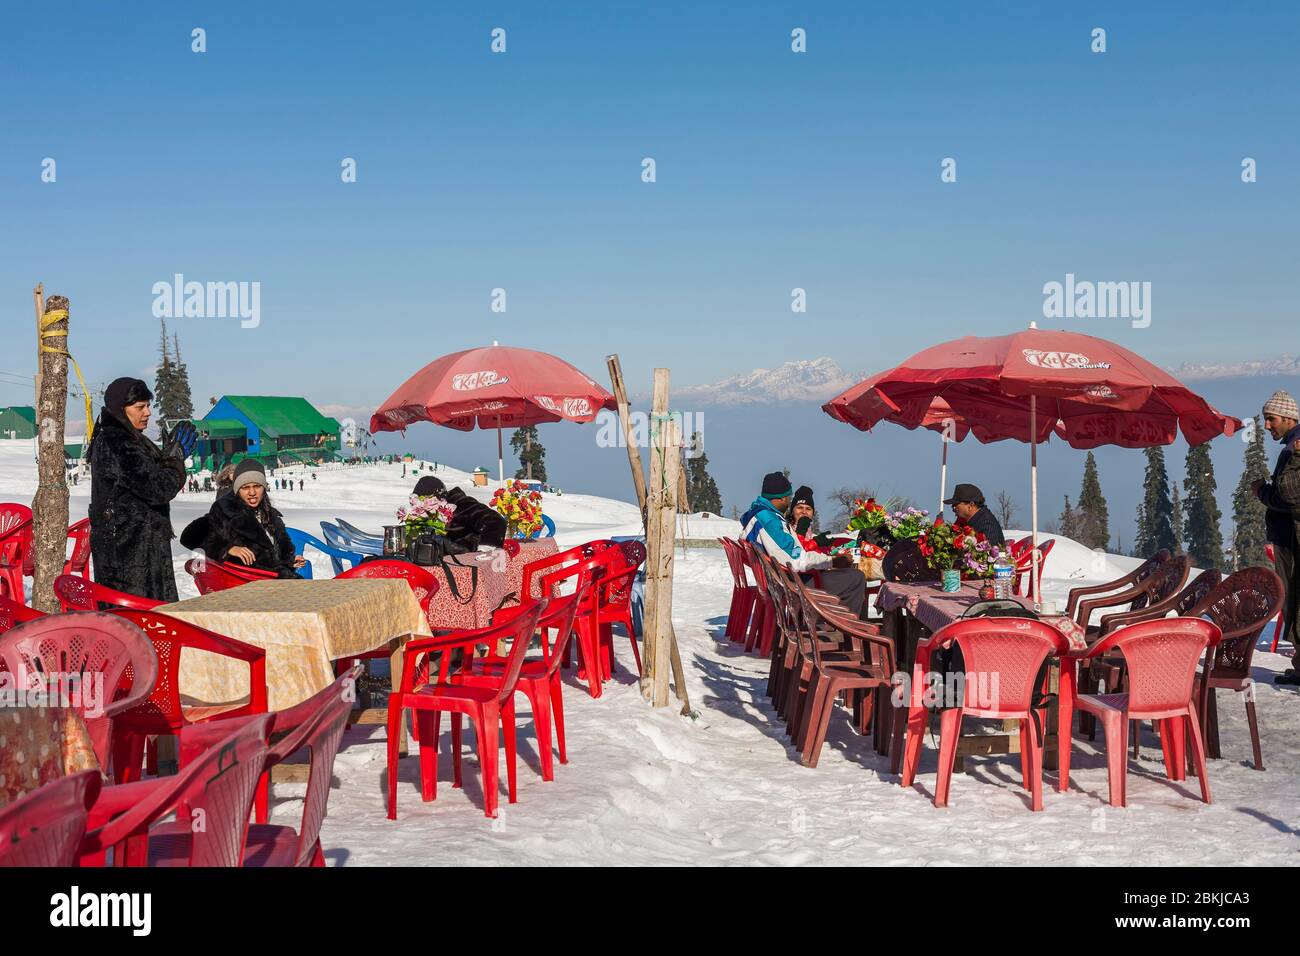 Indien, Jammu und Kaschmir, Gulmarg, indische Touristen sitzen in einem Restaurant im Freien auf dem Schnee, in Kongdoori, erste Station der Gondelbahn, Höhe 3090 Meter Stockfoto